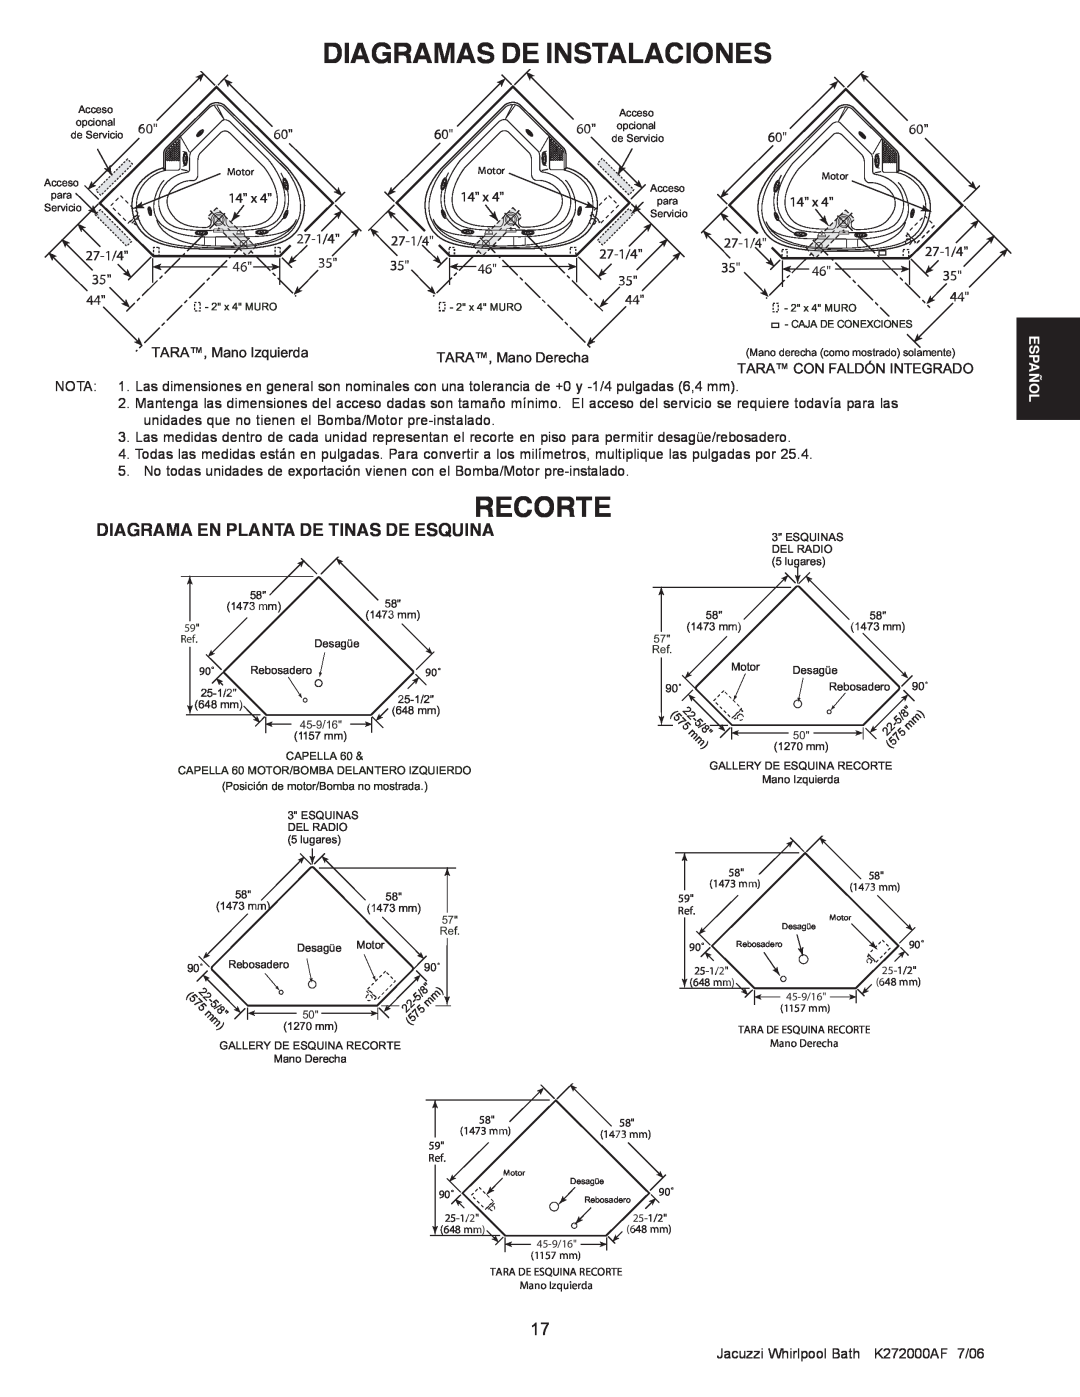 Jacuzzi K272000AF 7/06 manual Recorte, Diagramas De Instalaciones, Diagrama En Planta De Tinas De Esquina, 22 575- 5/8 mm 